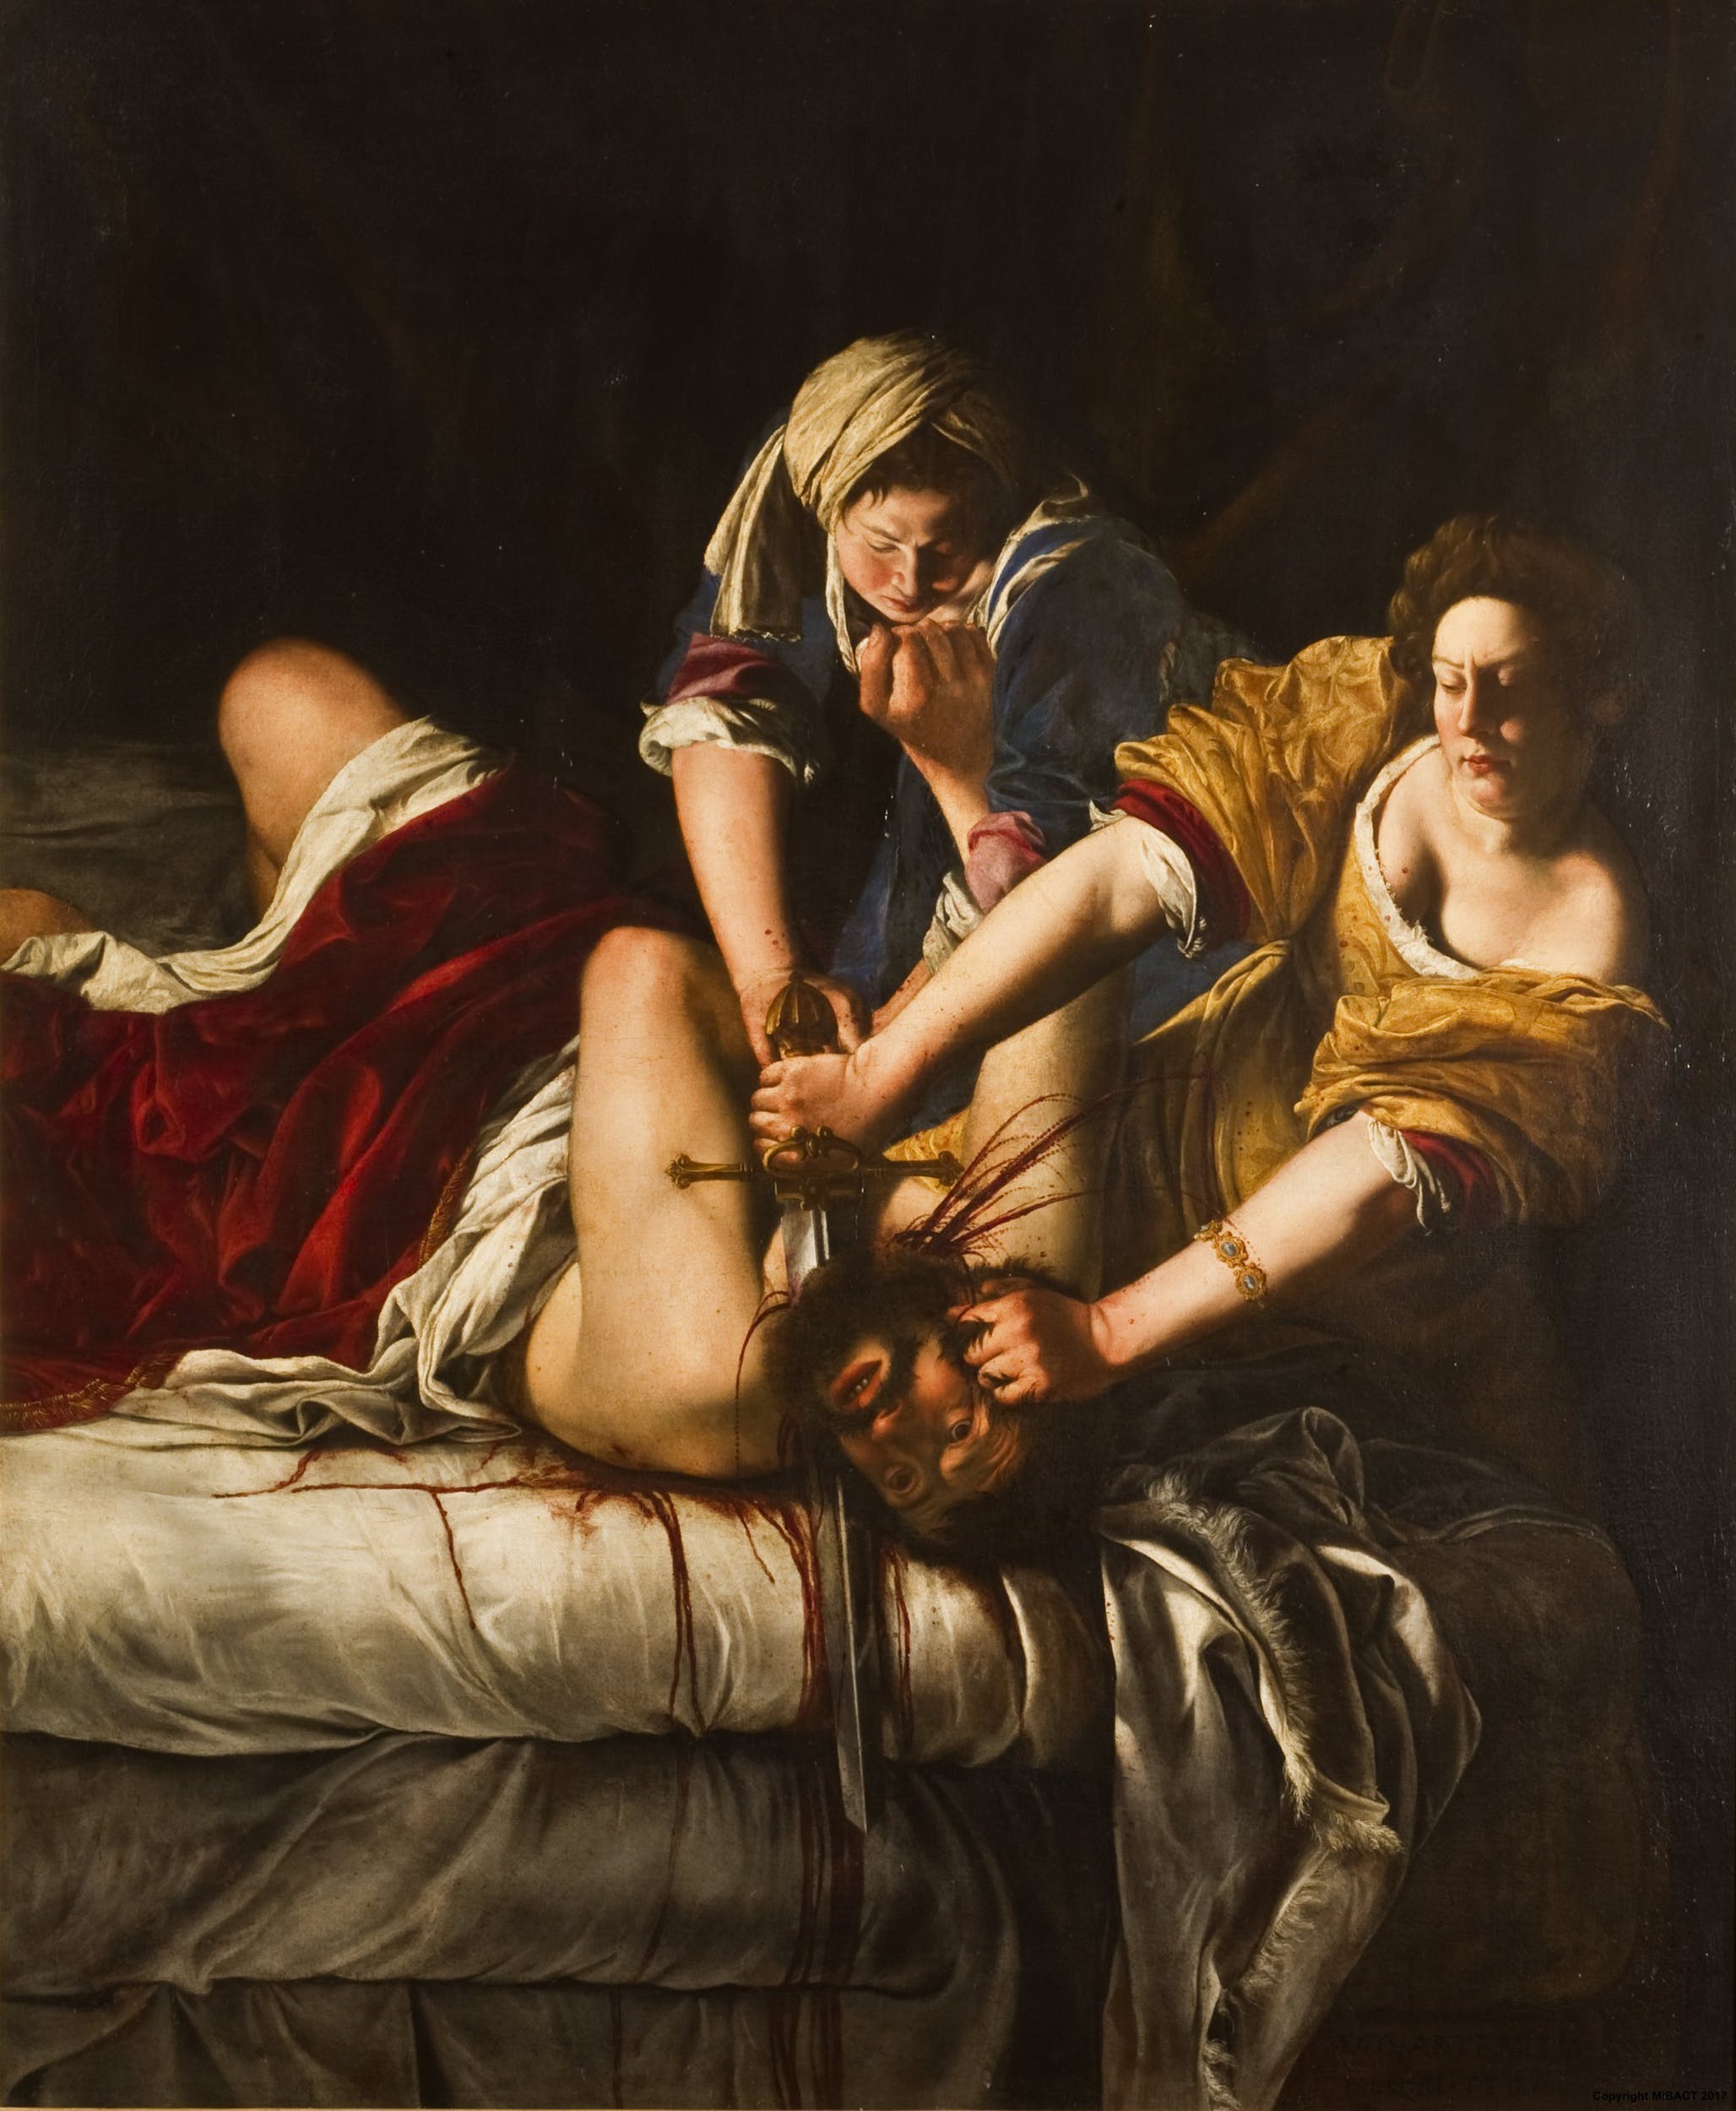 Mulheres na história da arte: para além de Artemisia Gentileschi